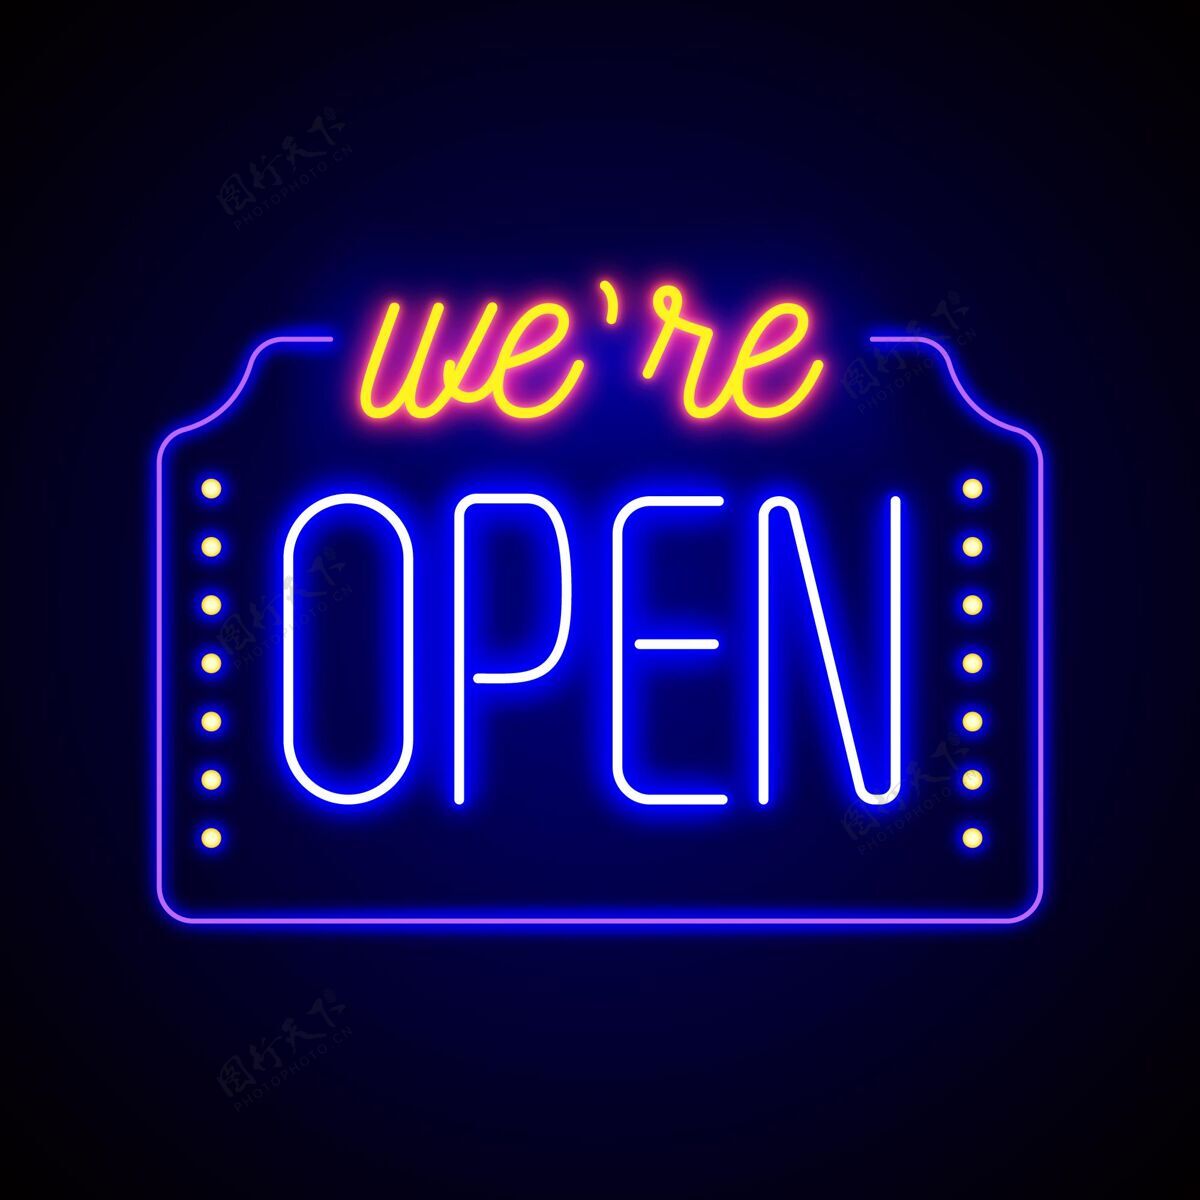 重新开业五颜六色的“我们开门”霓虹灯招牌开业招牌公告开业